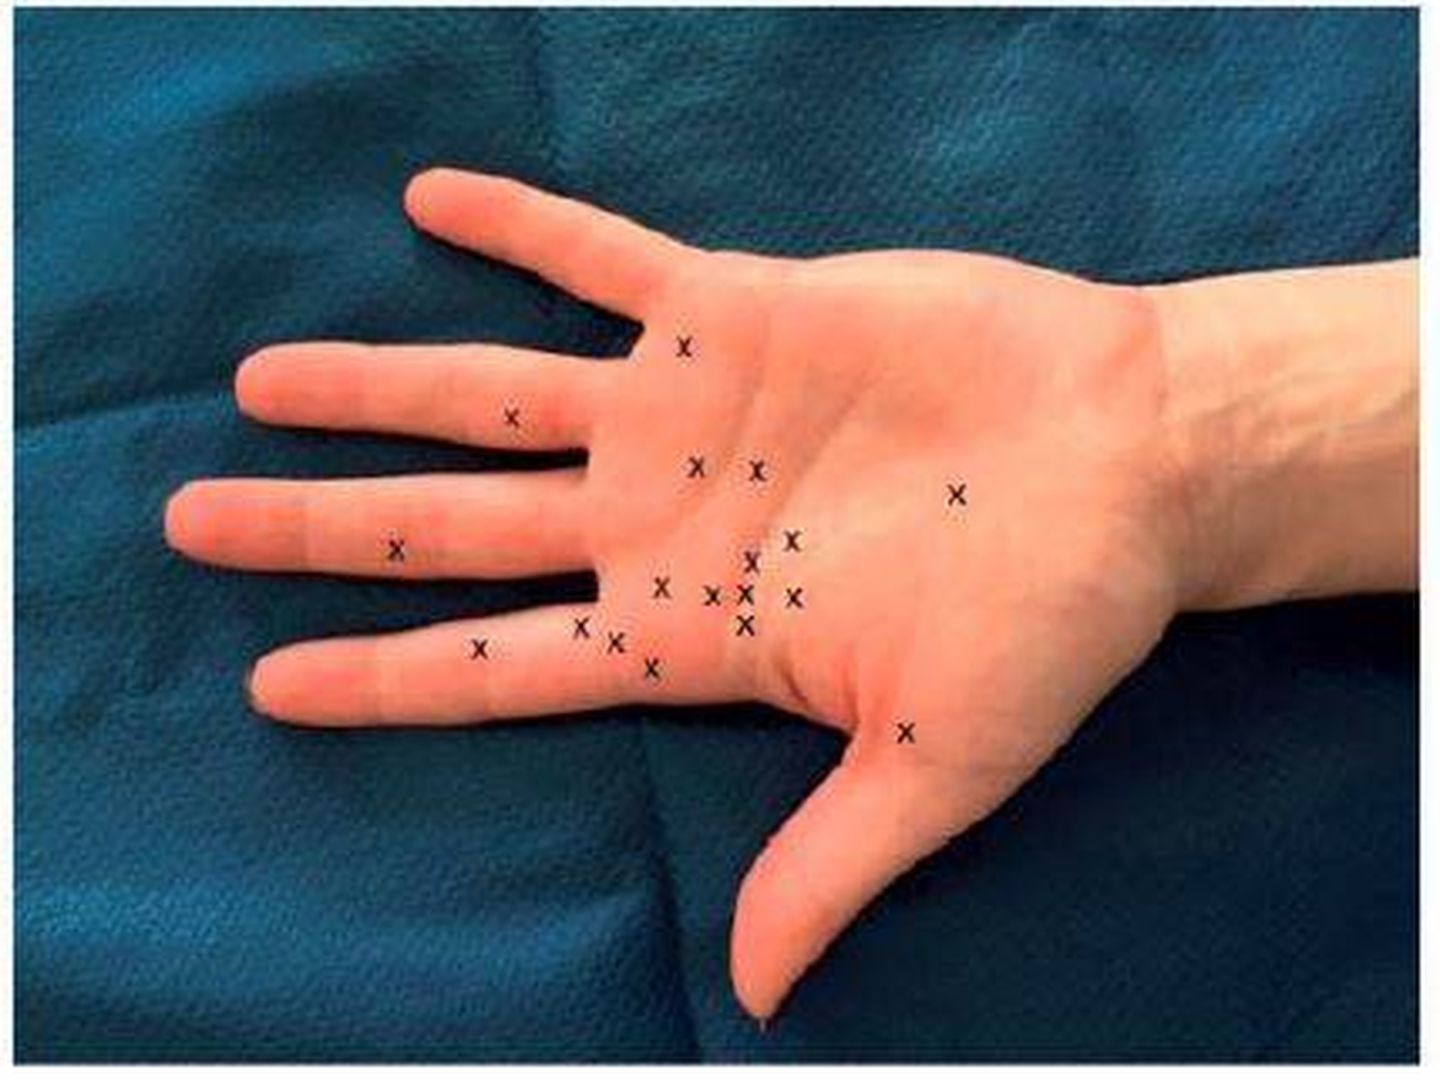 Aquí se produjeron las 18 lesiones al pelar un aguacate (Journal of Hand Surgery)